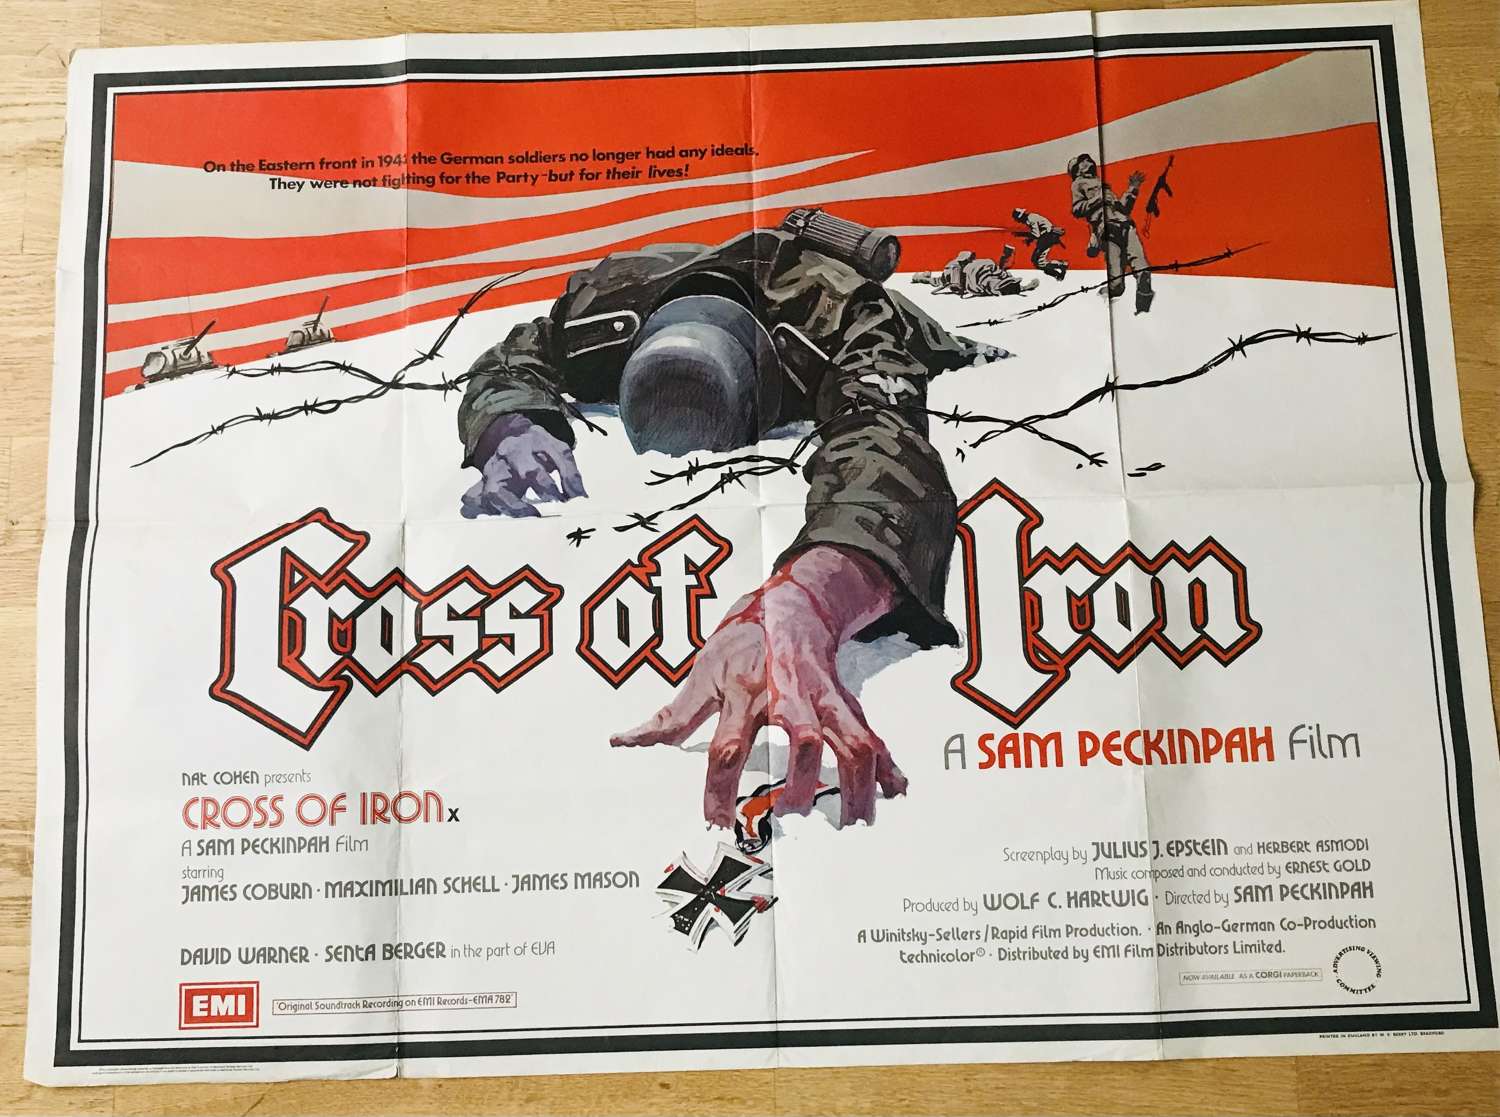 Cross of iron, 1977, British quad film poster